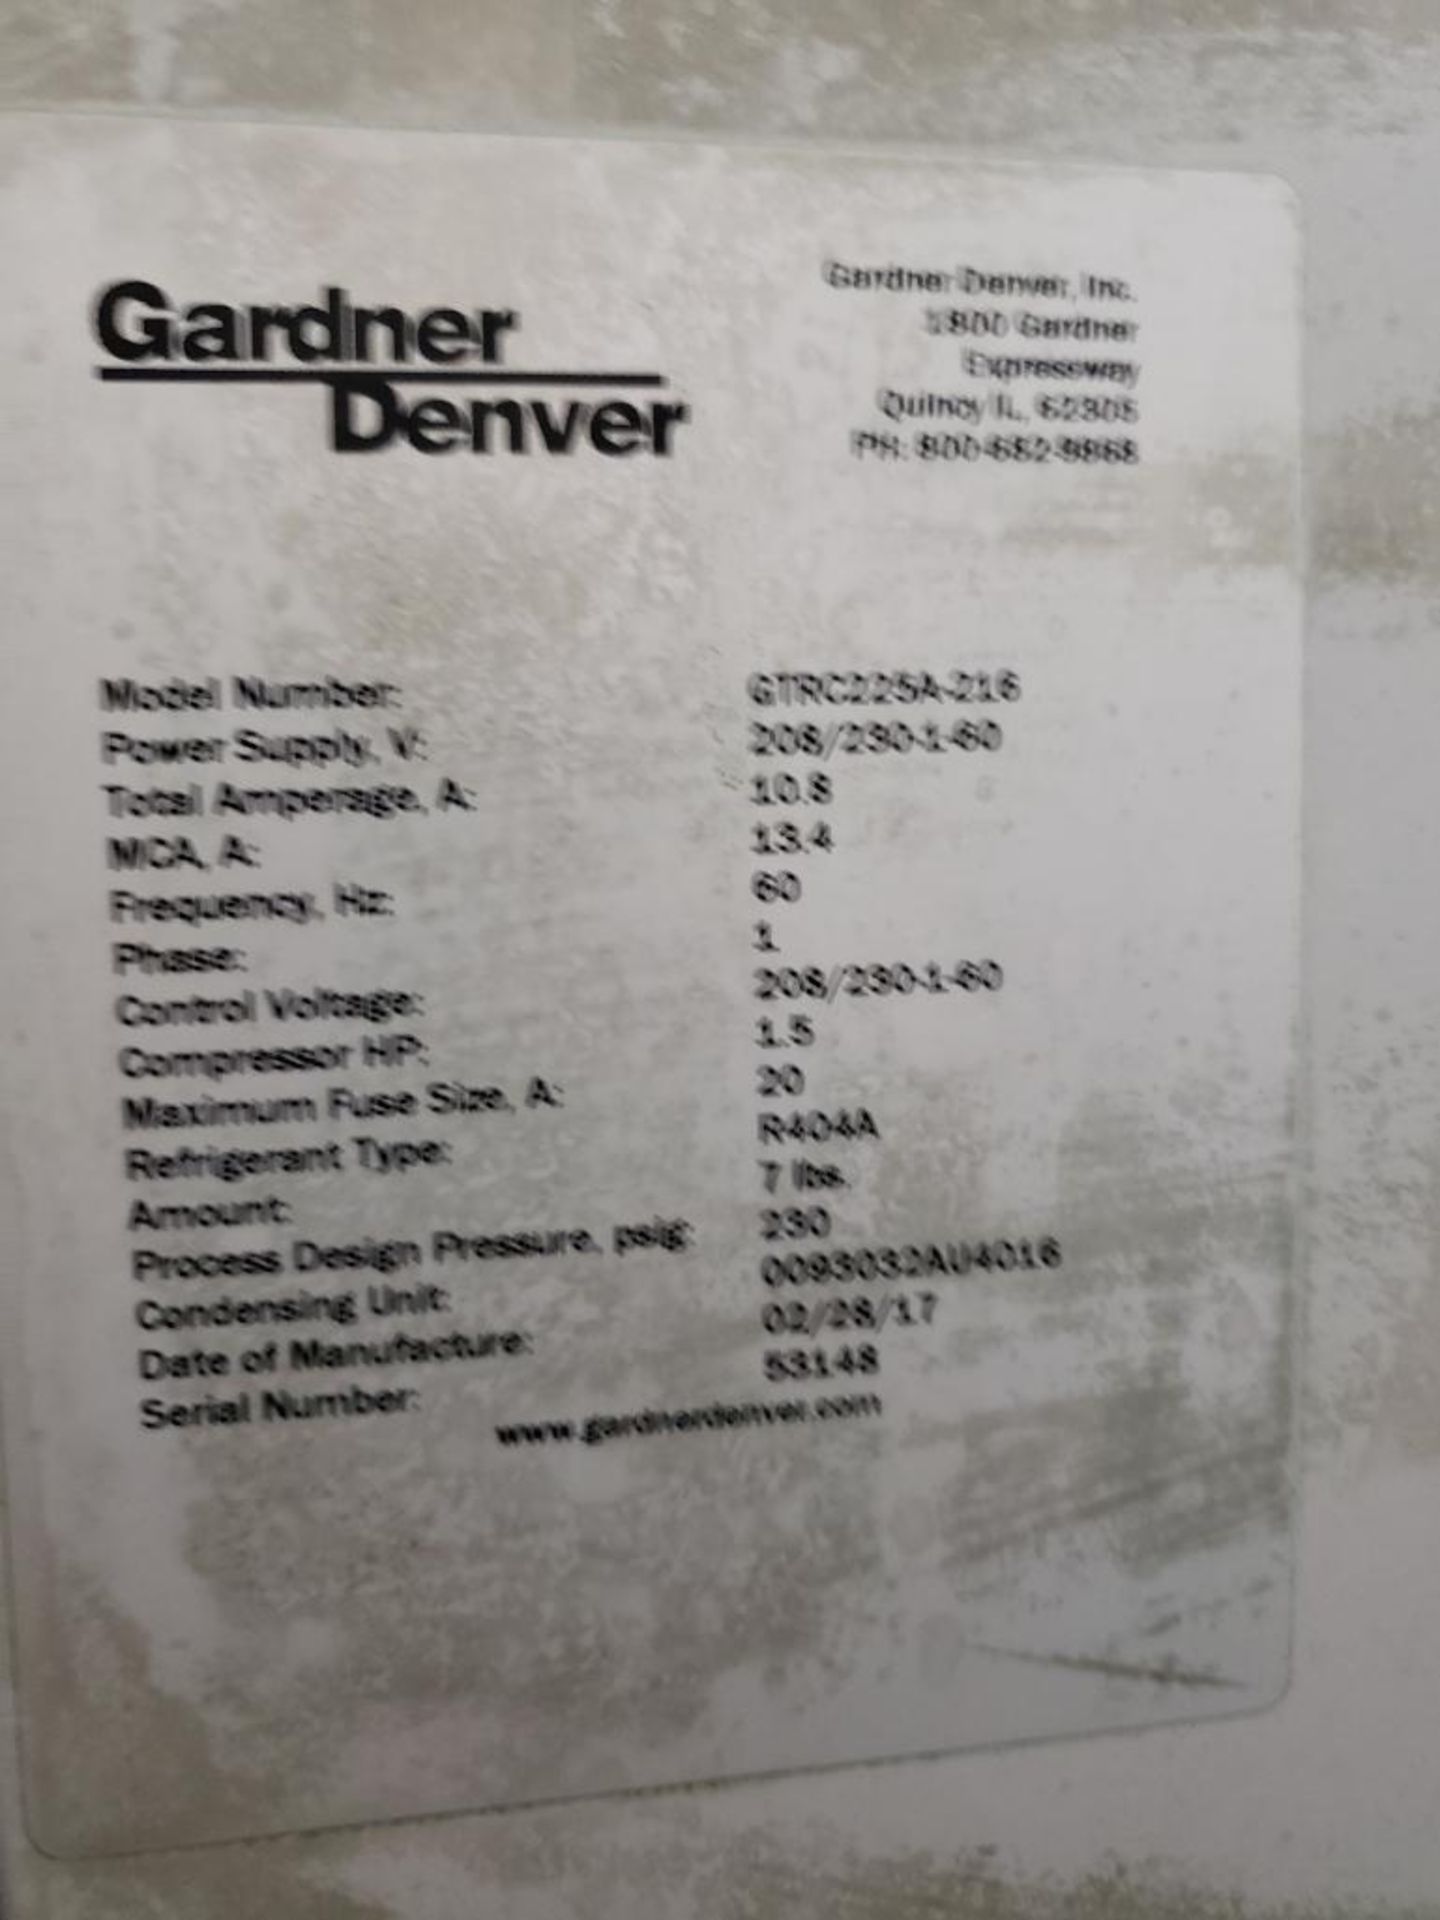 Gardner Denver Refrigerated Air Dryer - Image 2 of 2